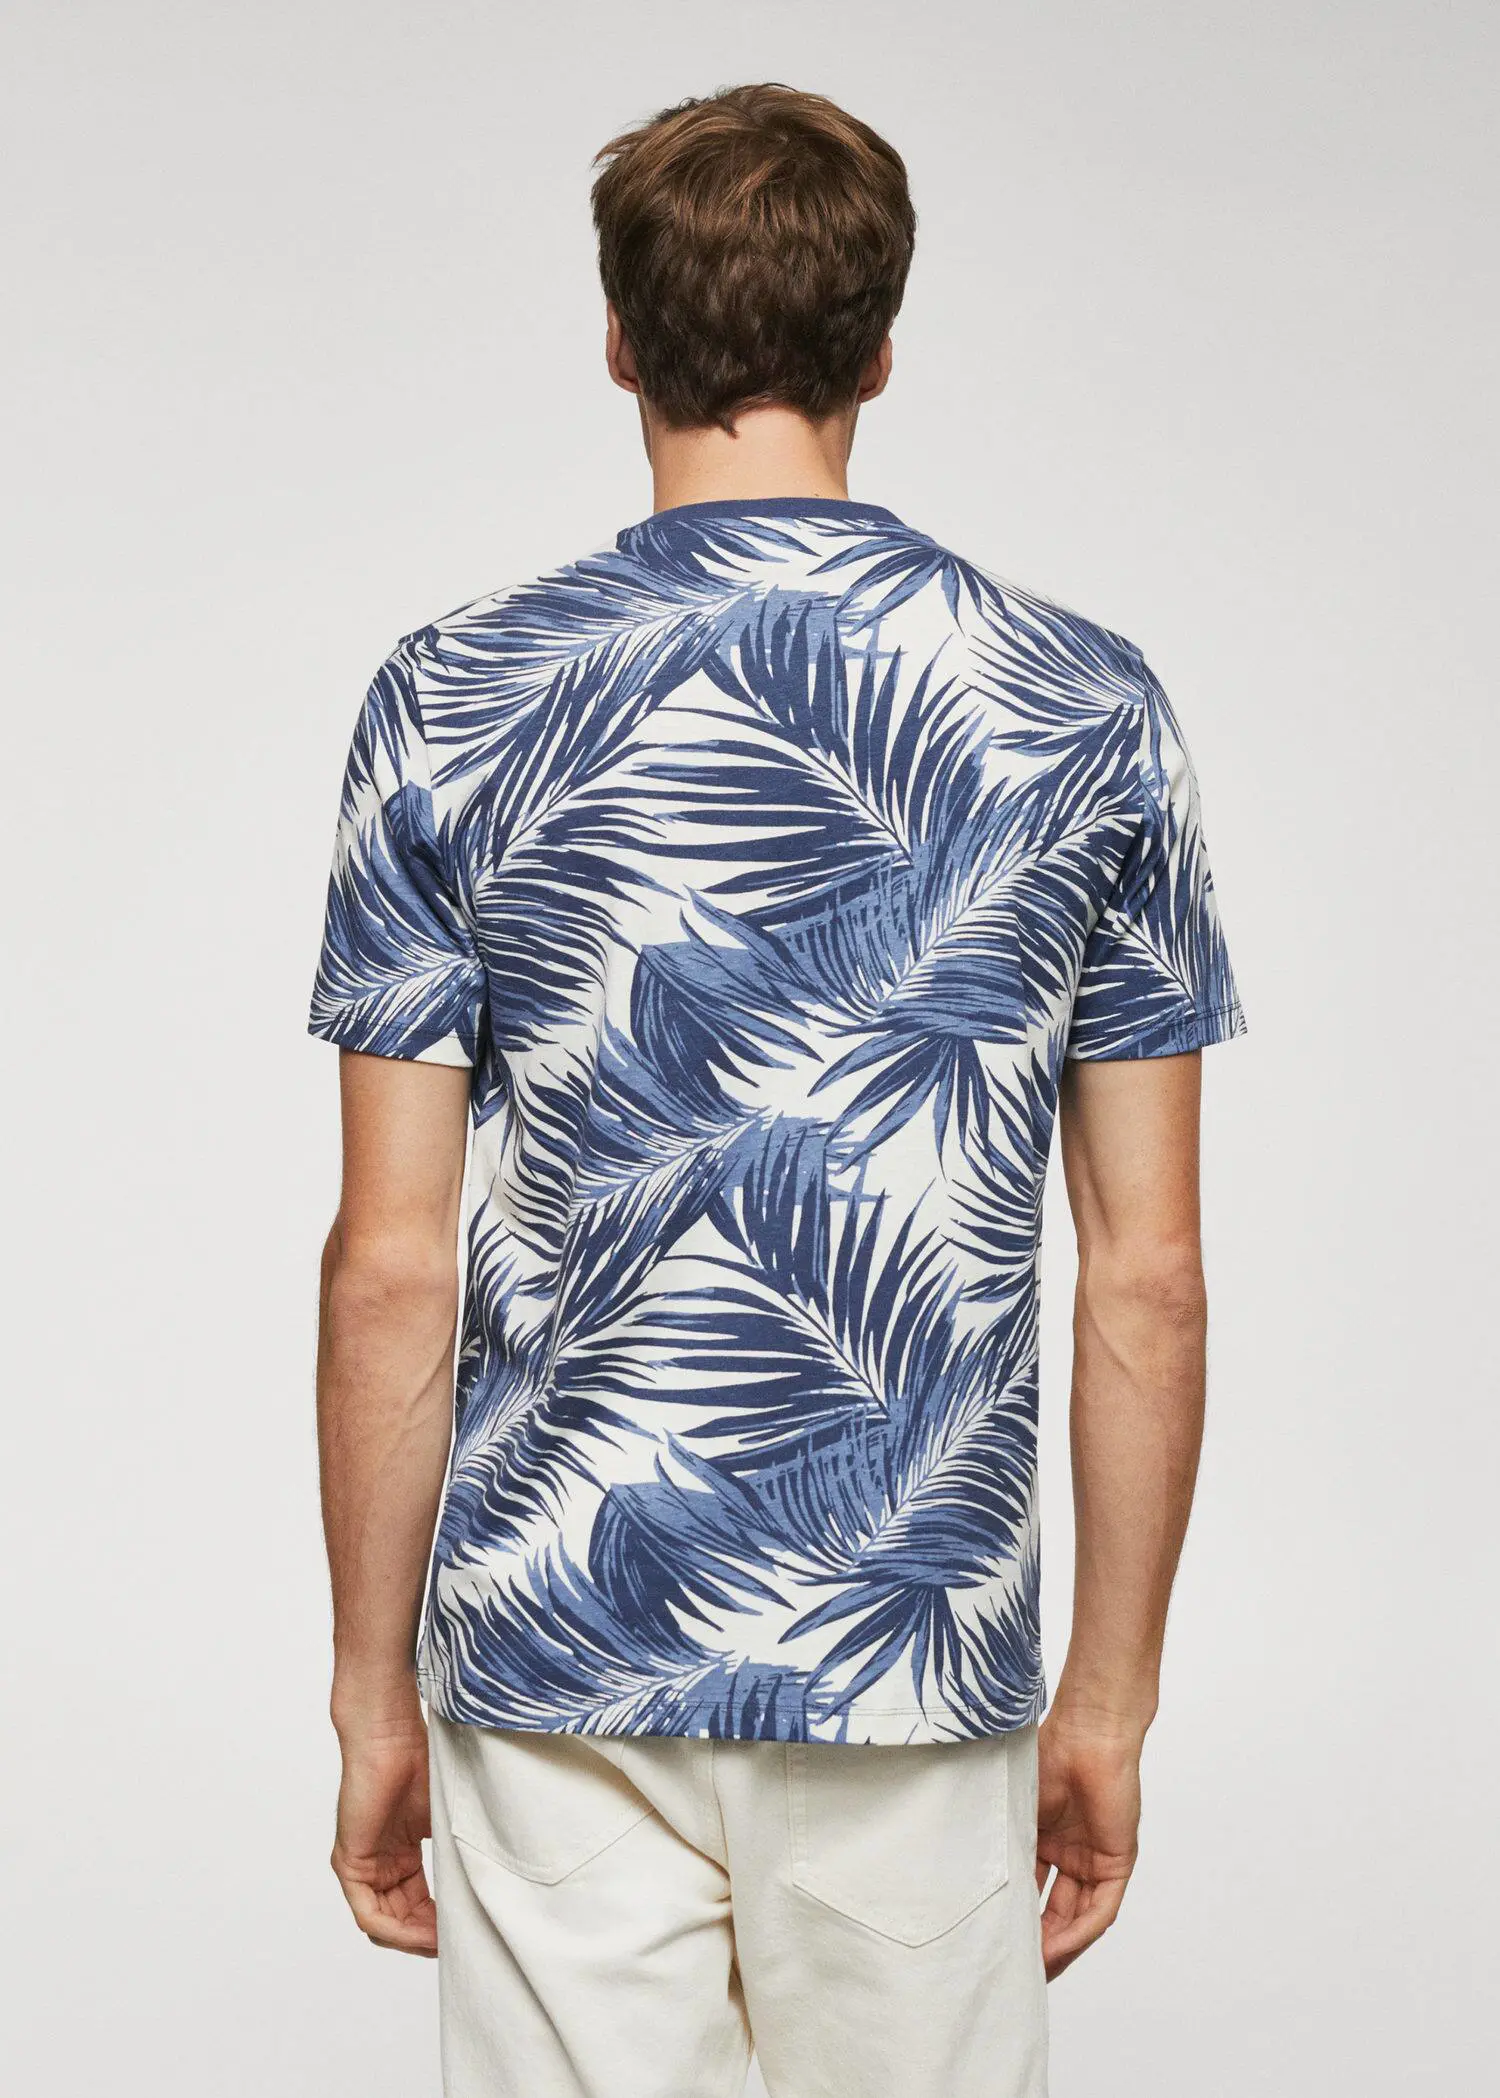 Mango Camisa slim fit com estampado de palmeiras. 3